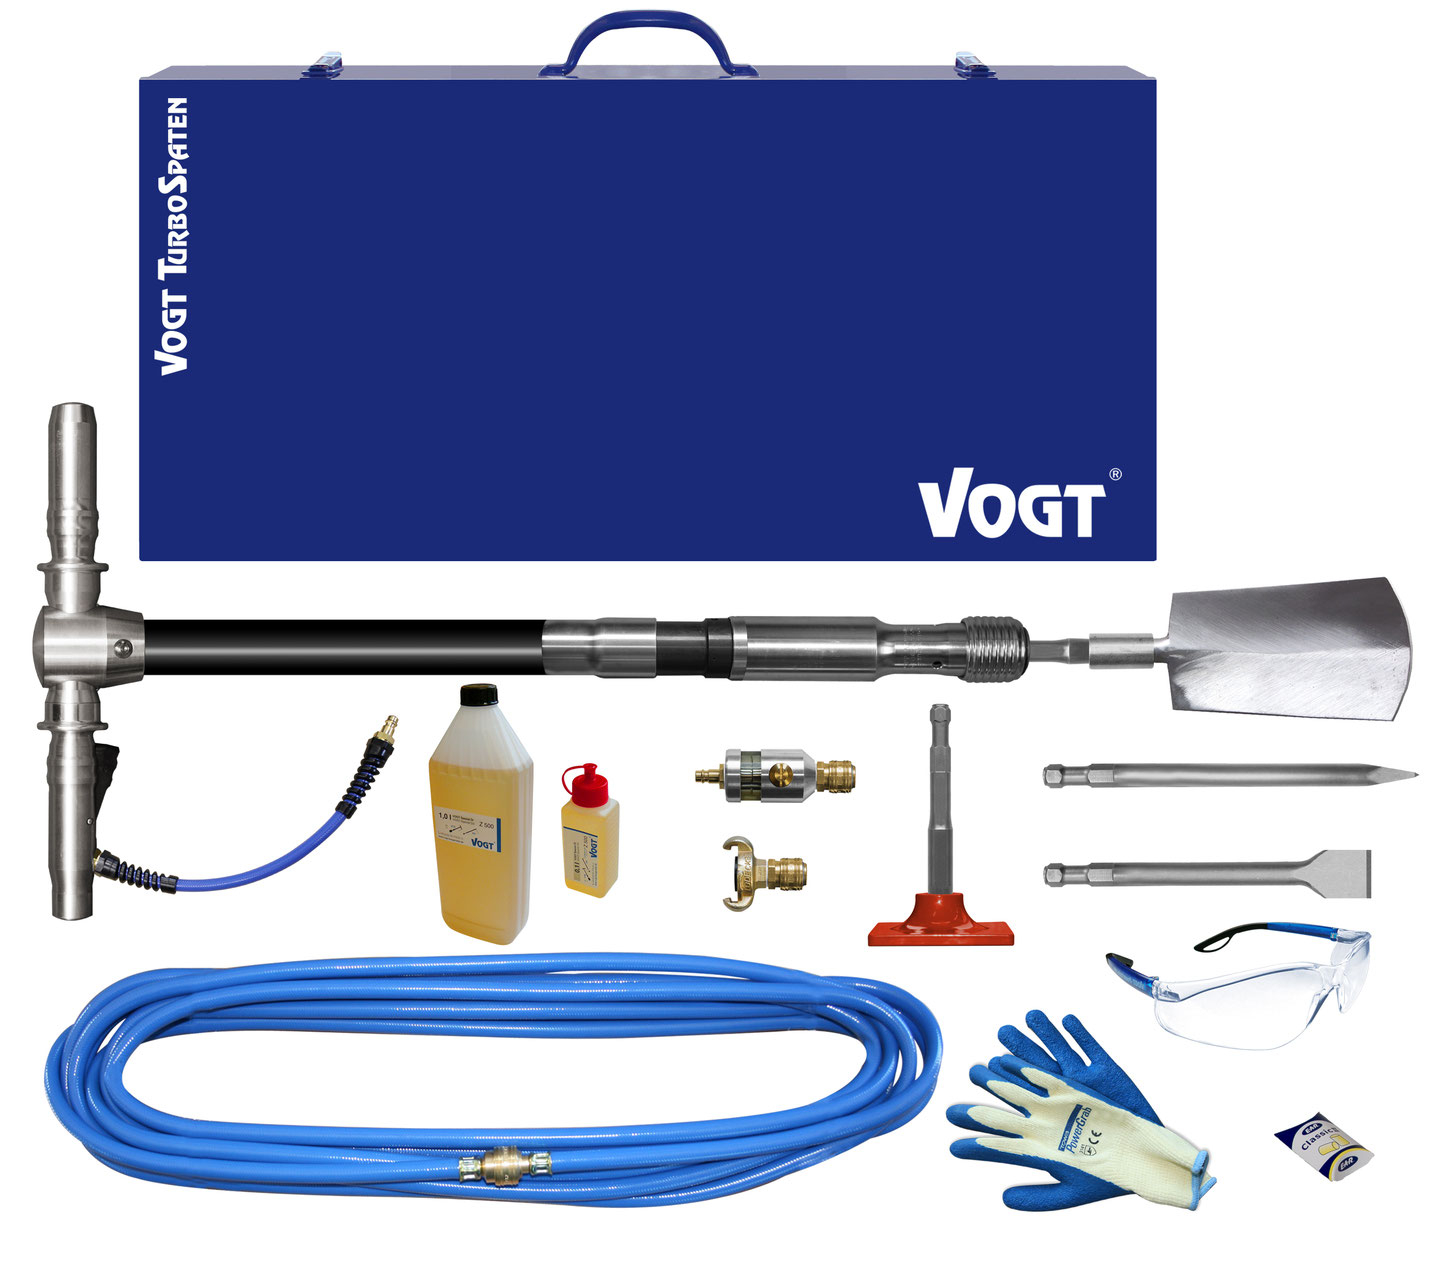 VOGT TurboSpaten Gerätesets - Umfangreiche Werkzeugausstattung für Innen-, Außenputz und Wandfliesen